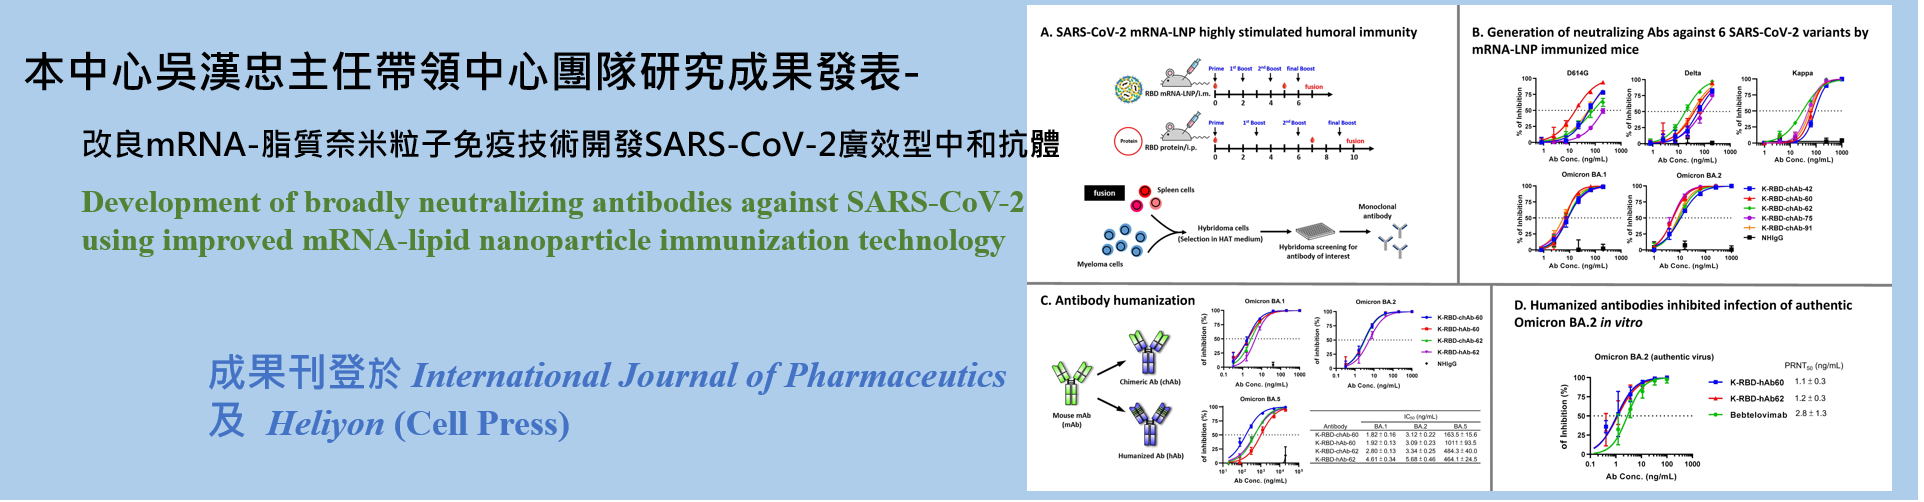 賀 吳漢忠主任研究成果發表-改良mRNA-脂質奈米粒子免疫技術開發SARS-CoV-2廣效型中和抗體